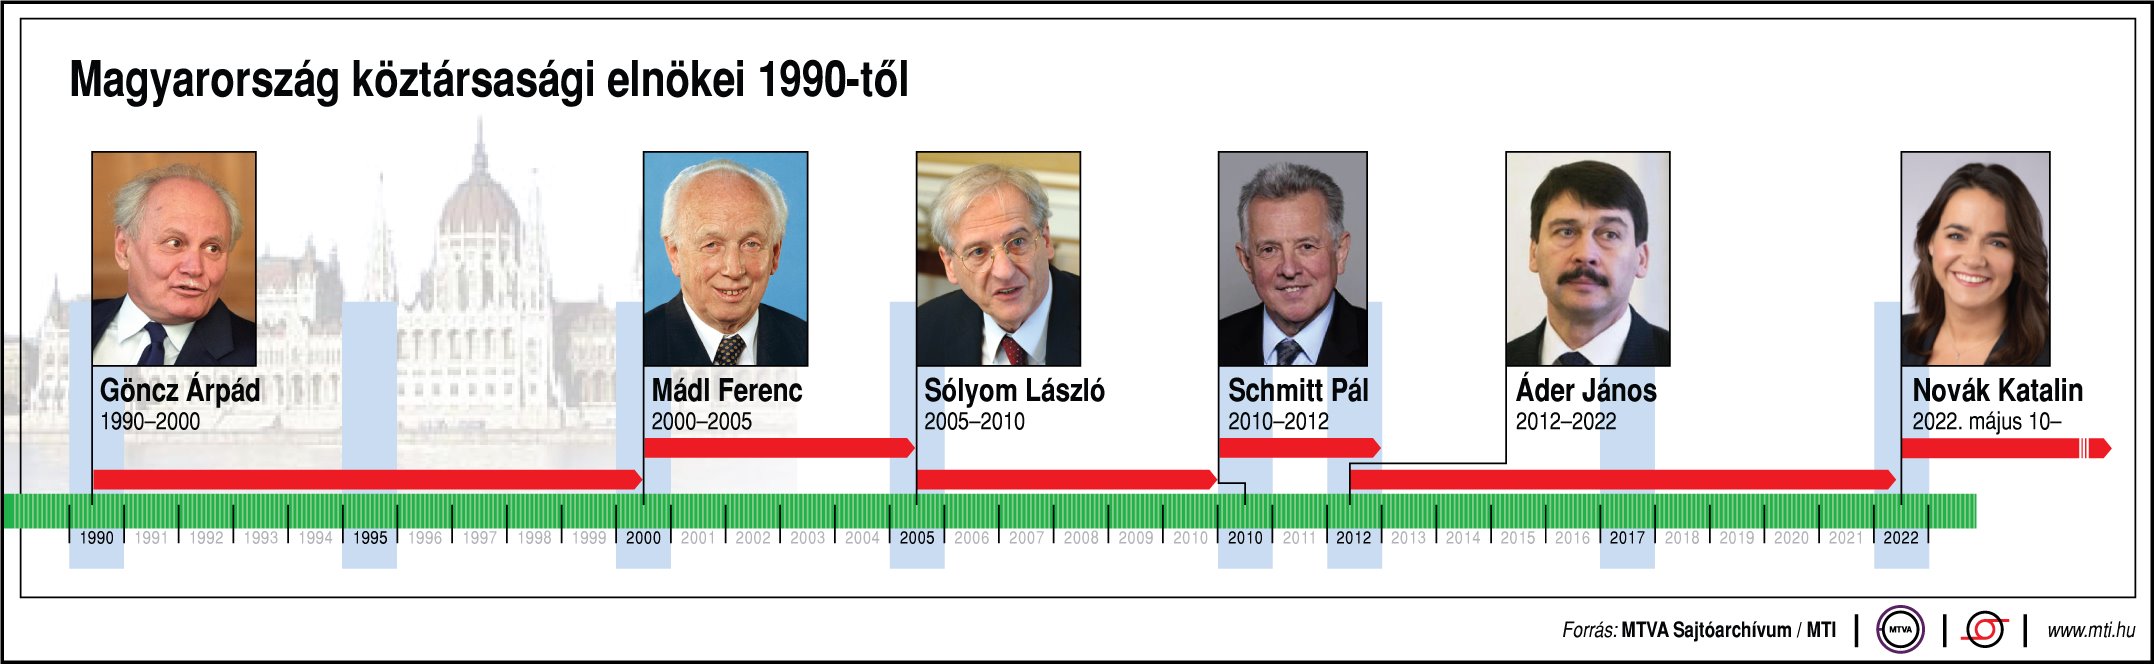 رئيس المجر منذ عام 1990